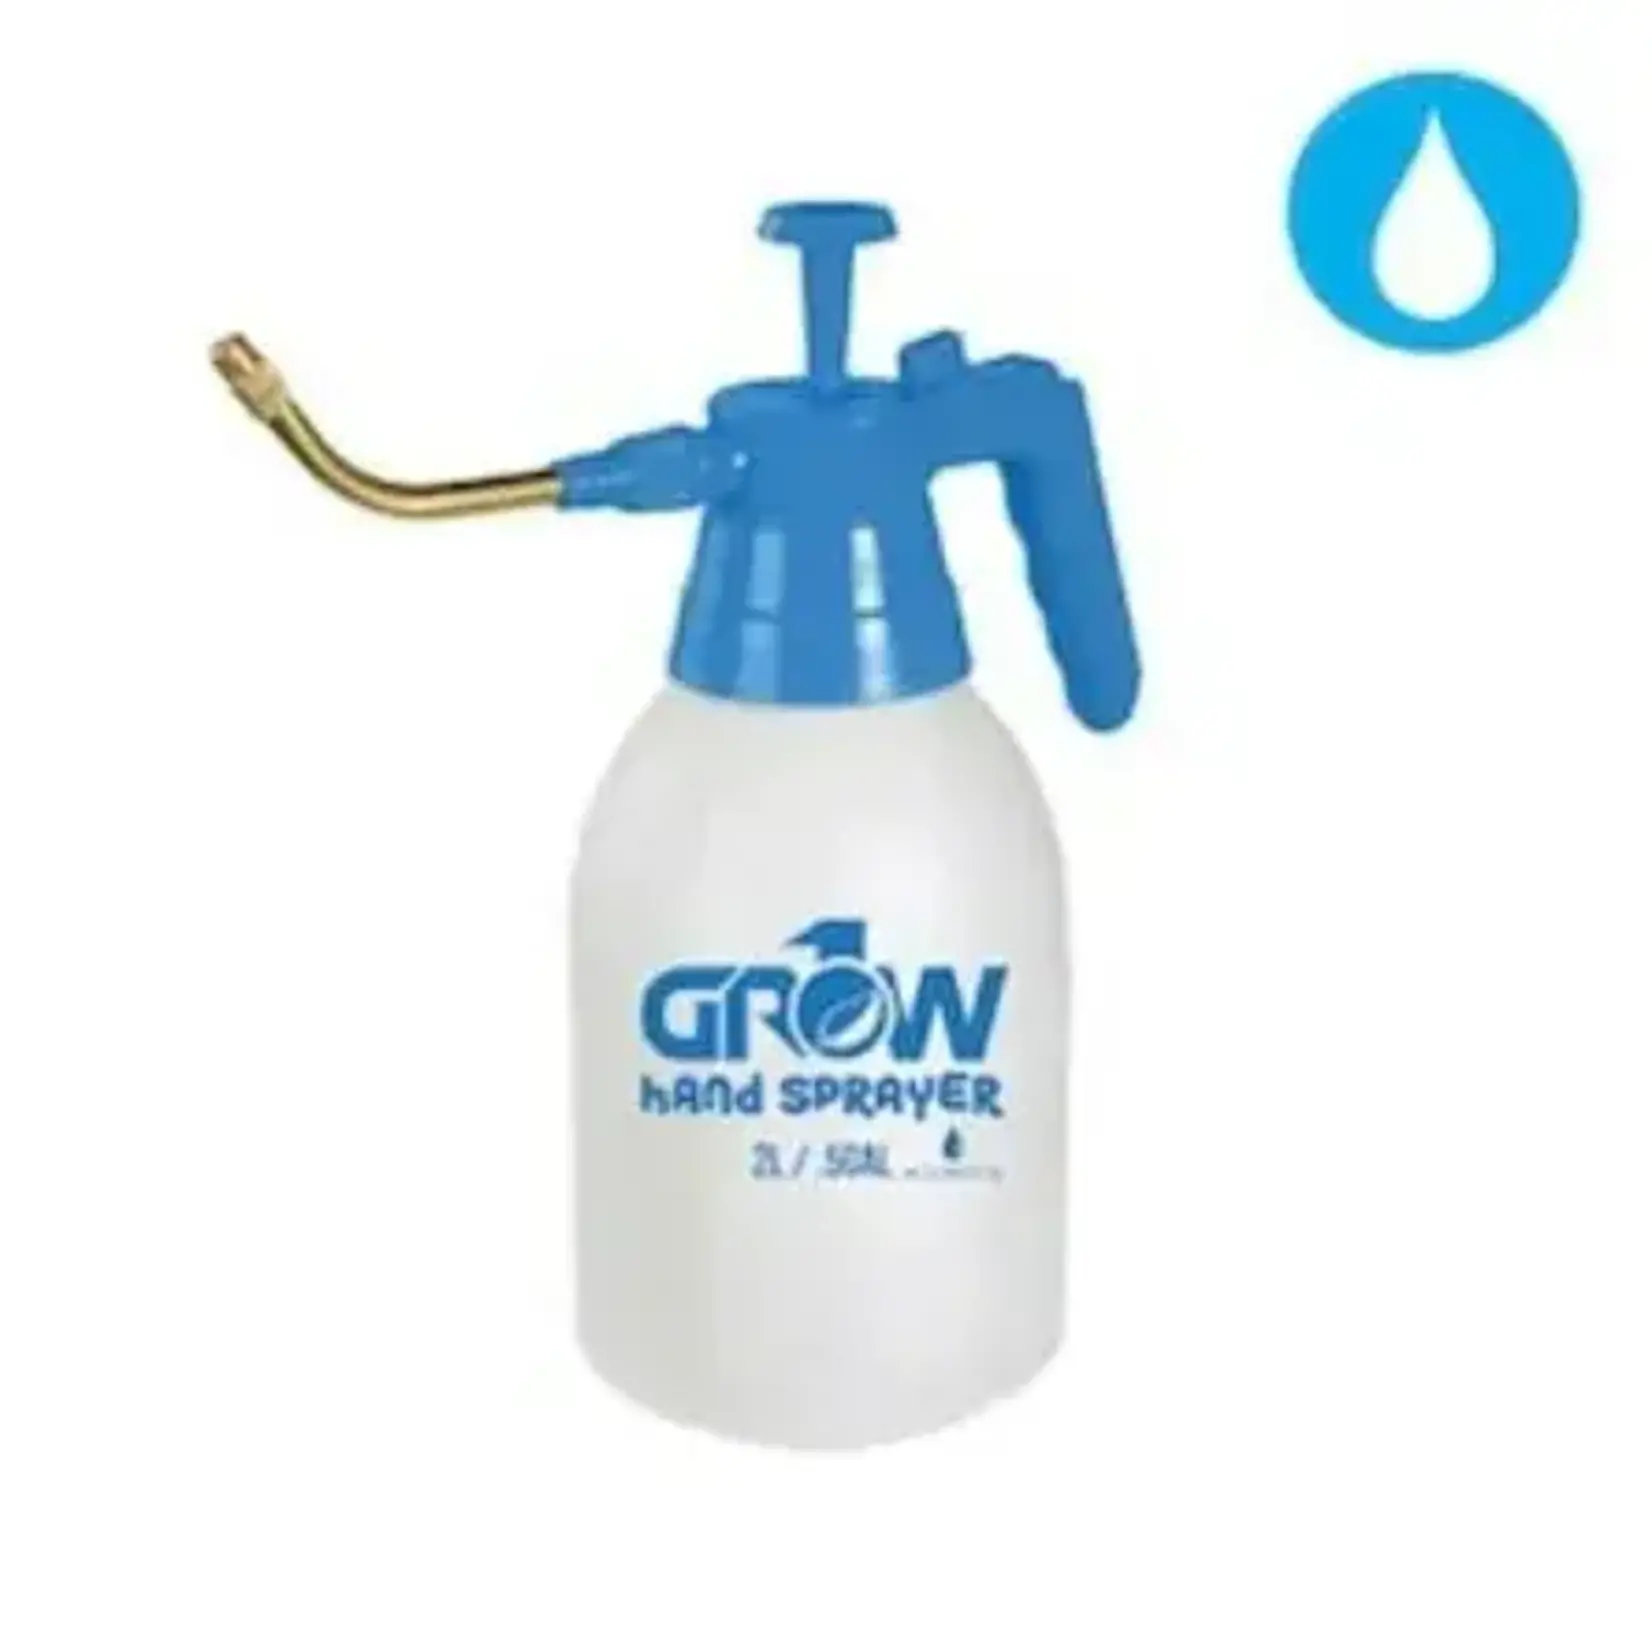 Grow1 Sprayer 1/2 Gallon